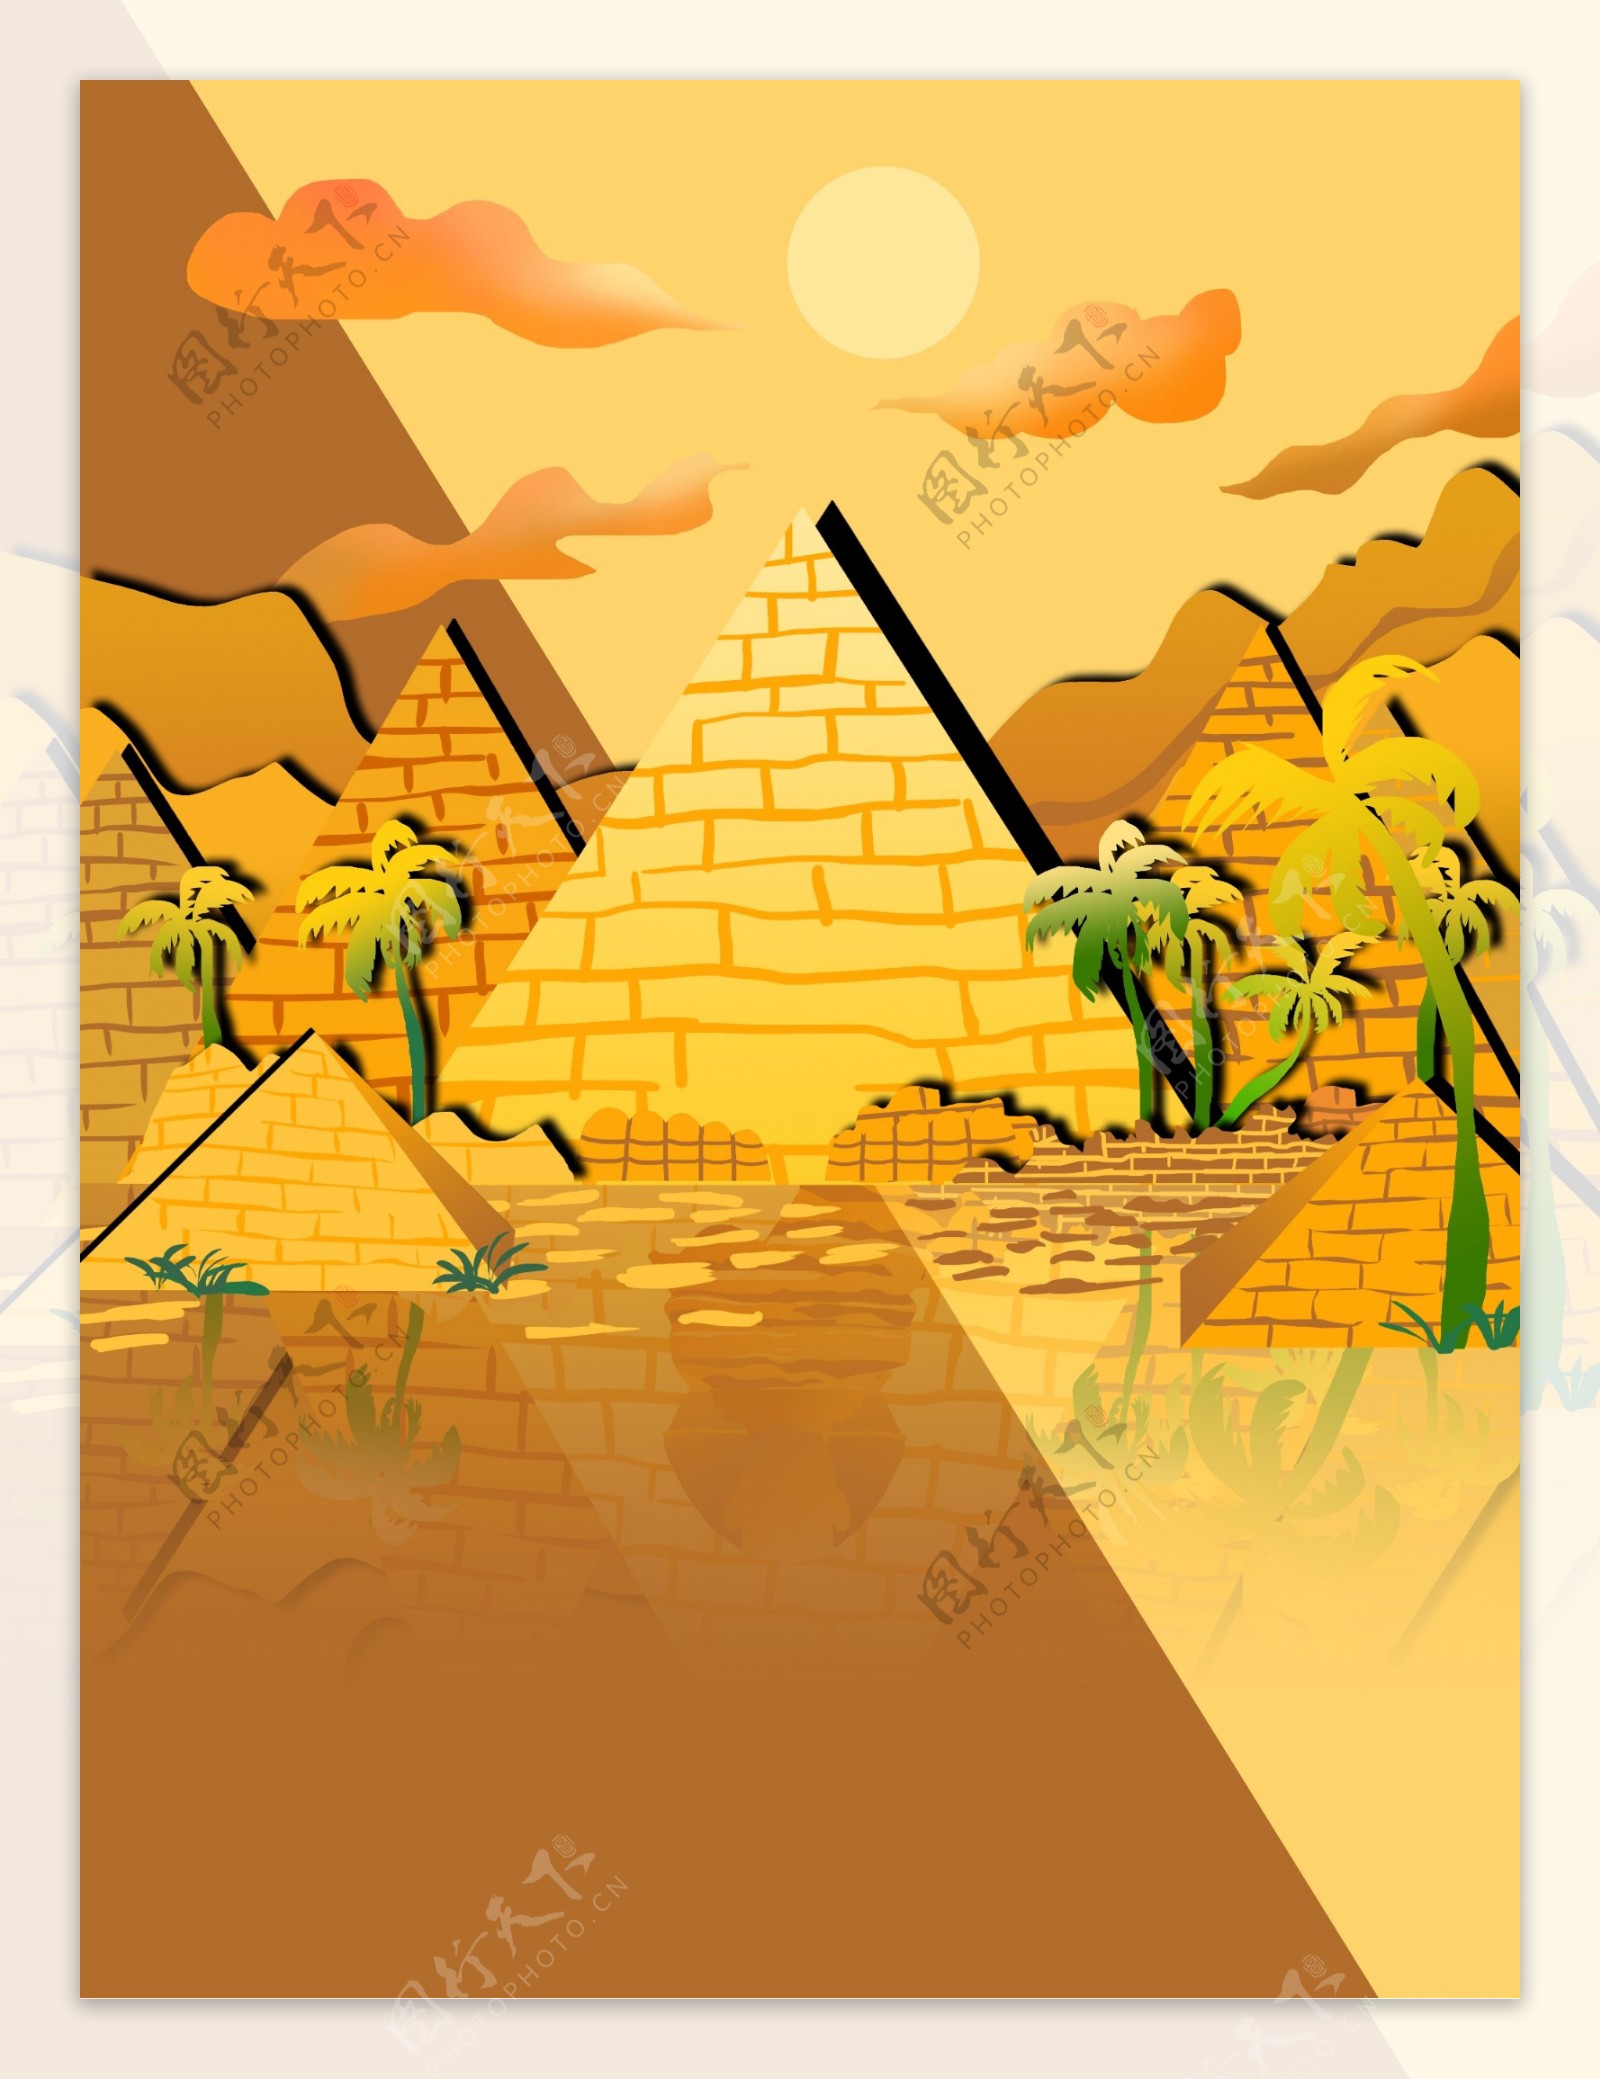 埃及金字塔椰树剪影背景设计